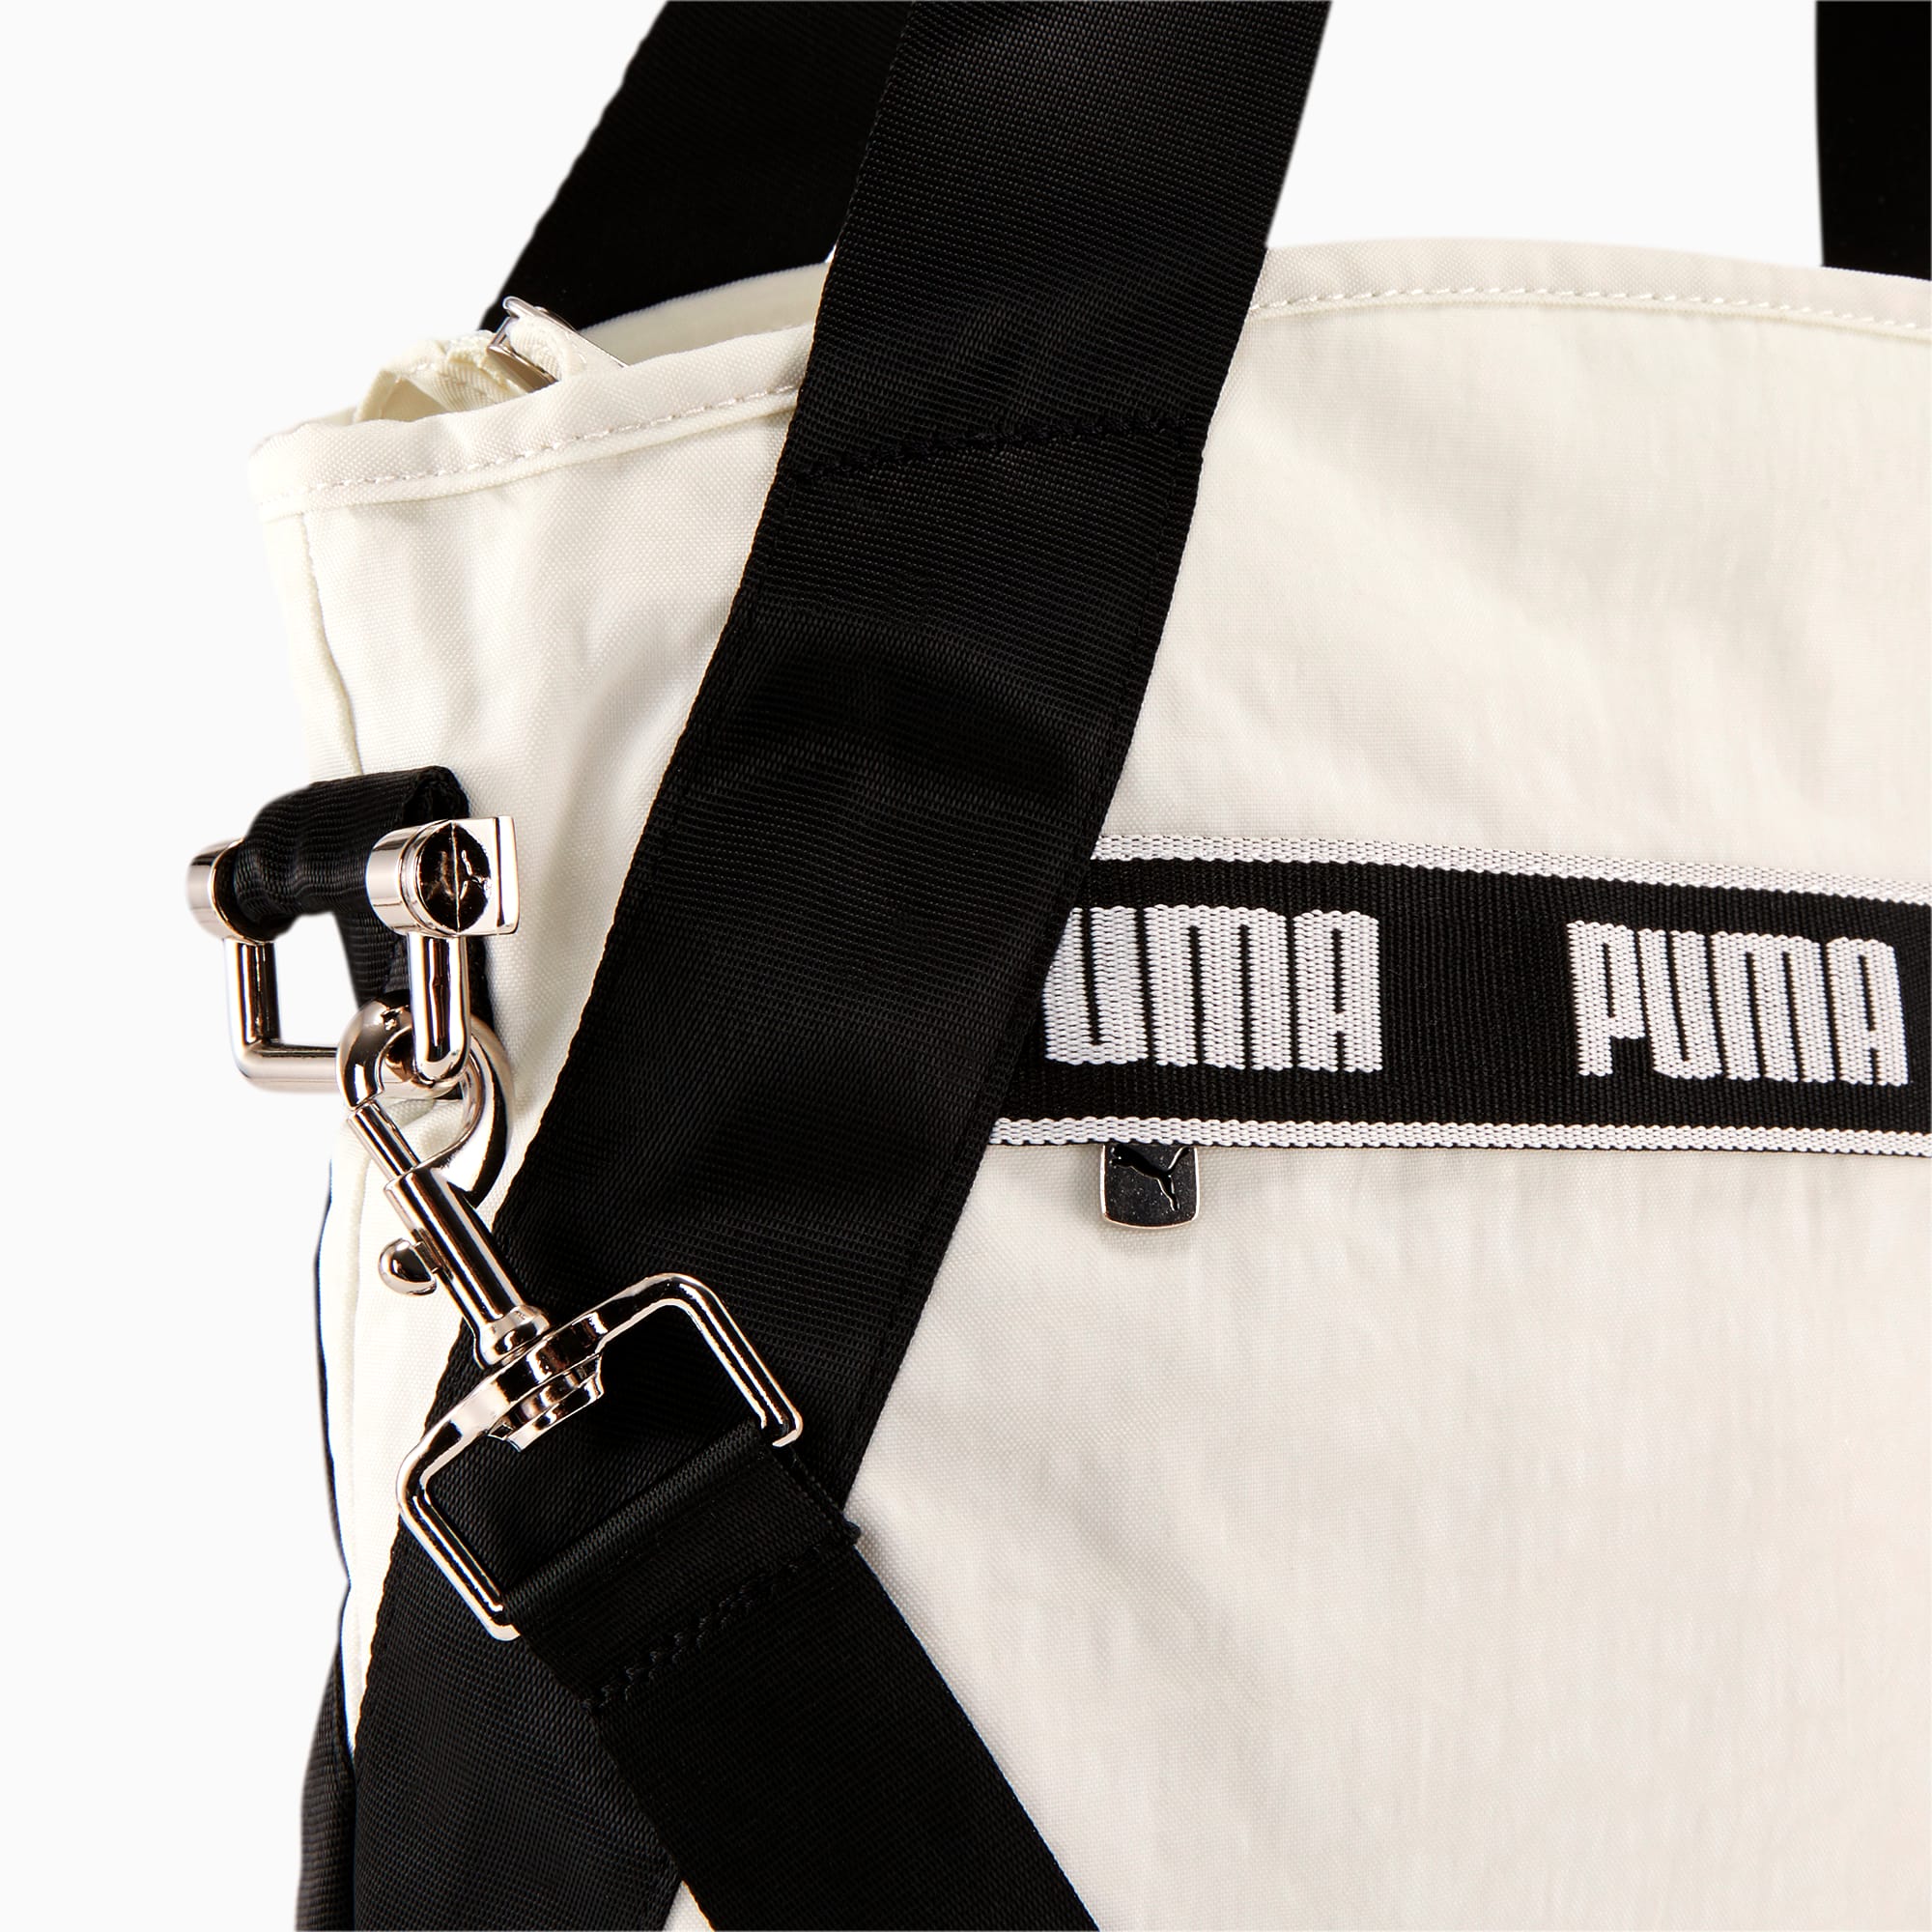 puma beach bag